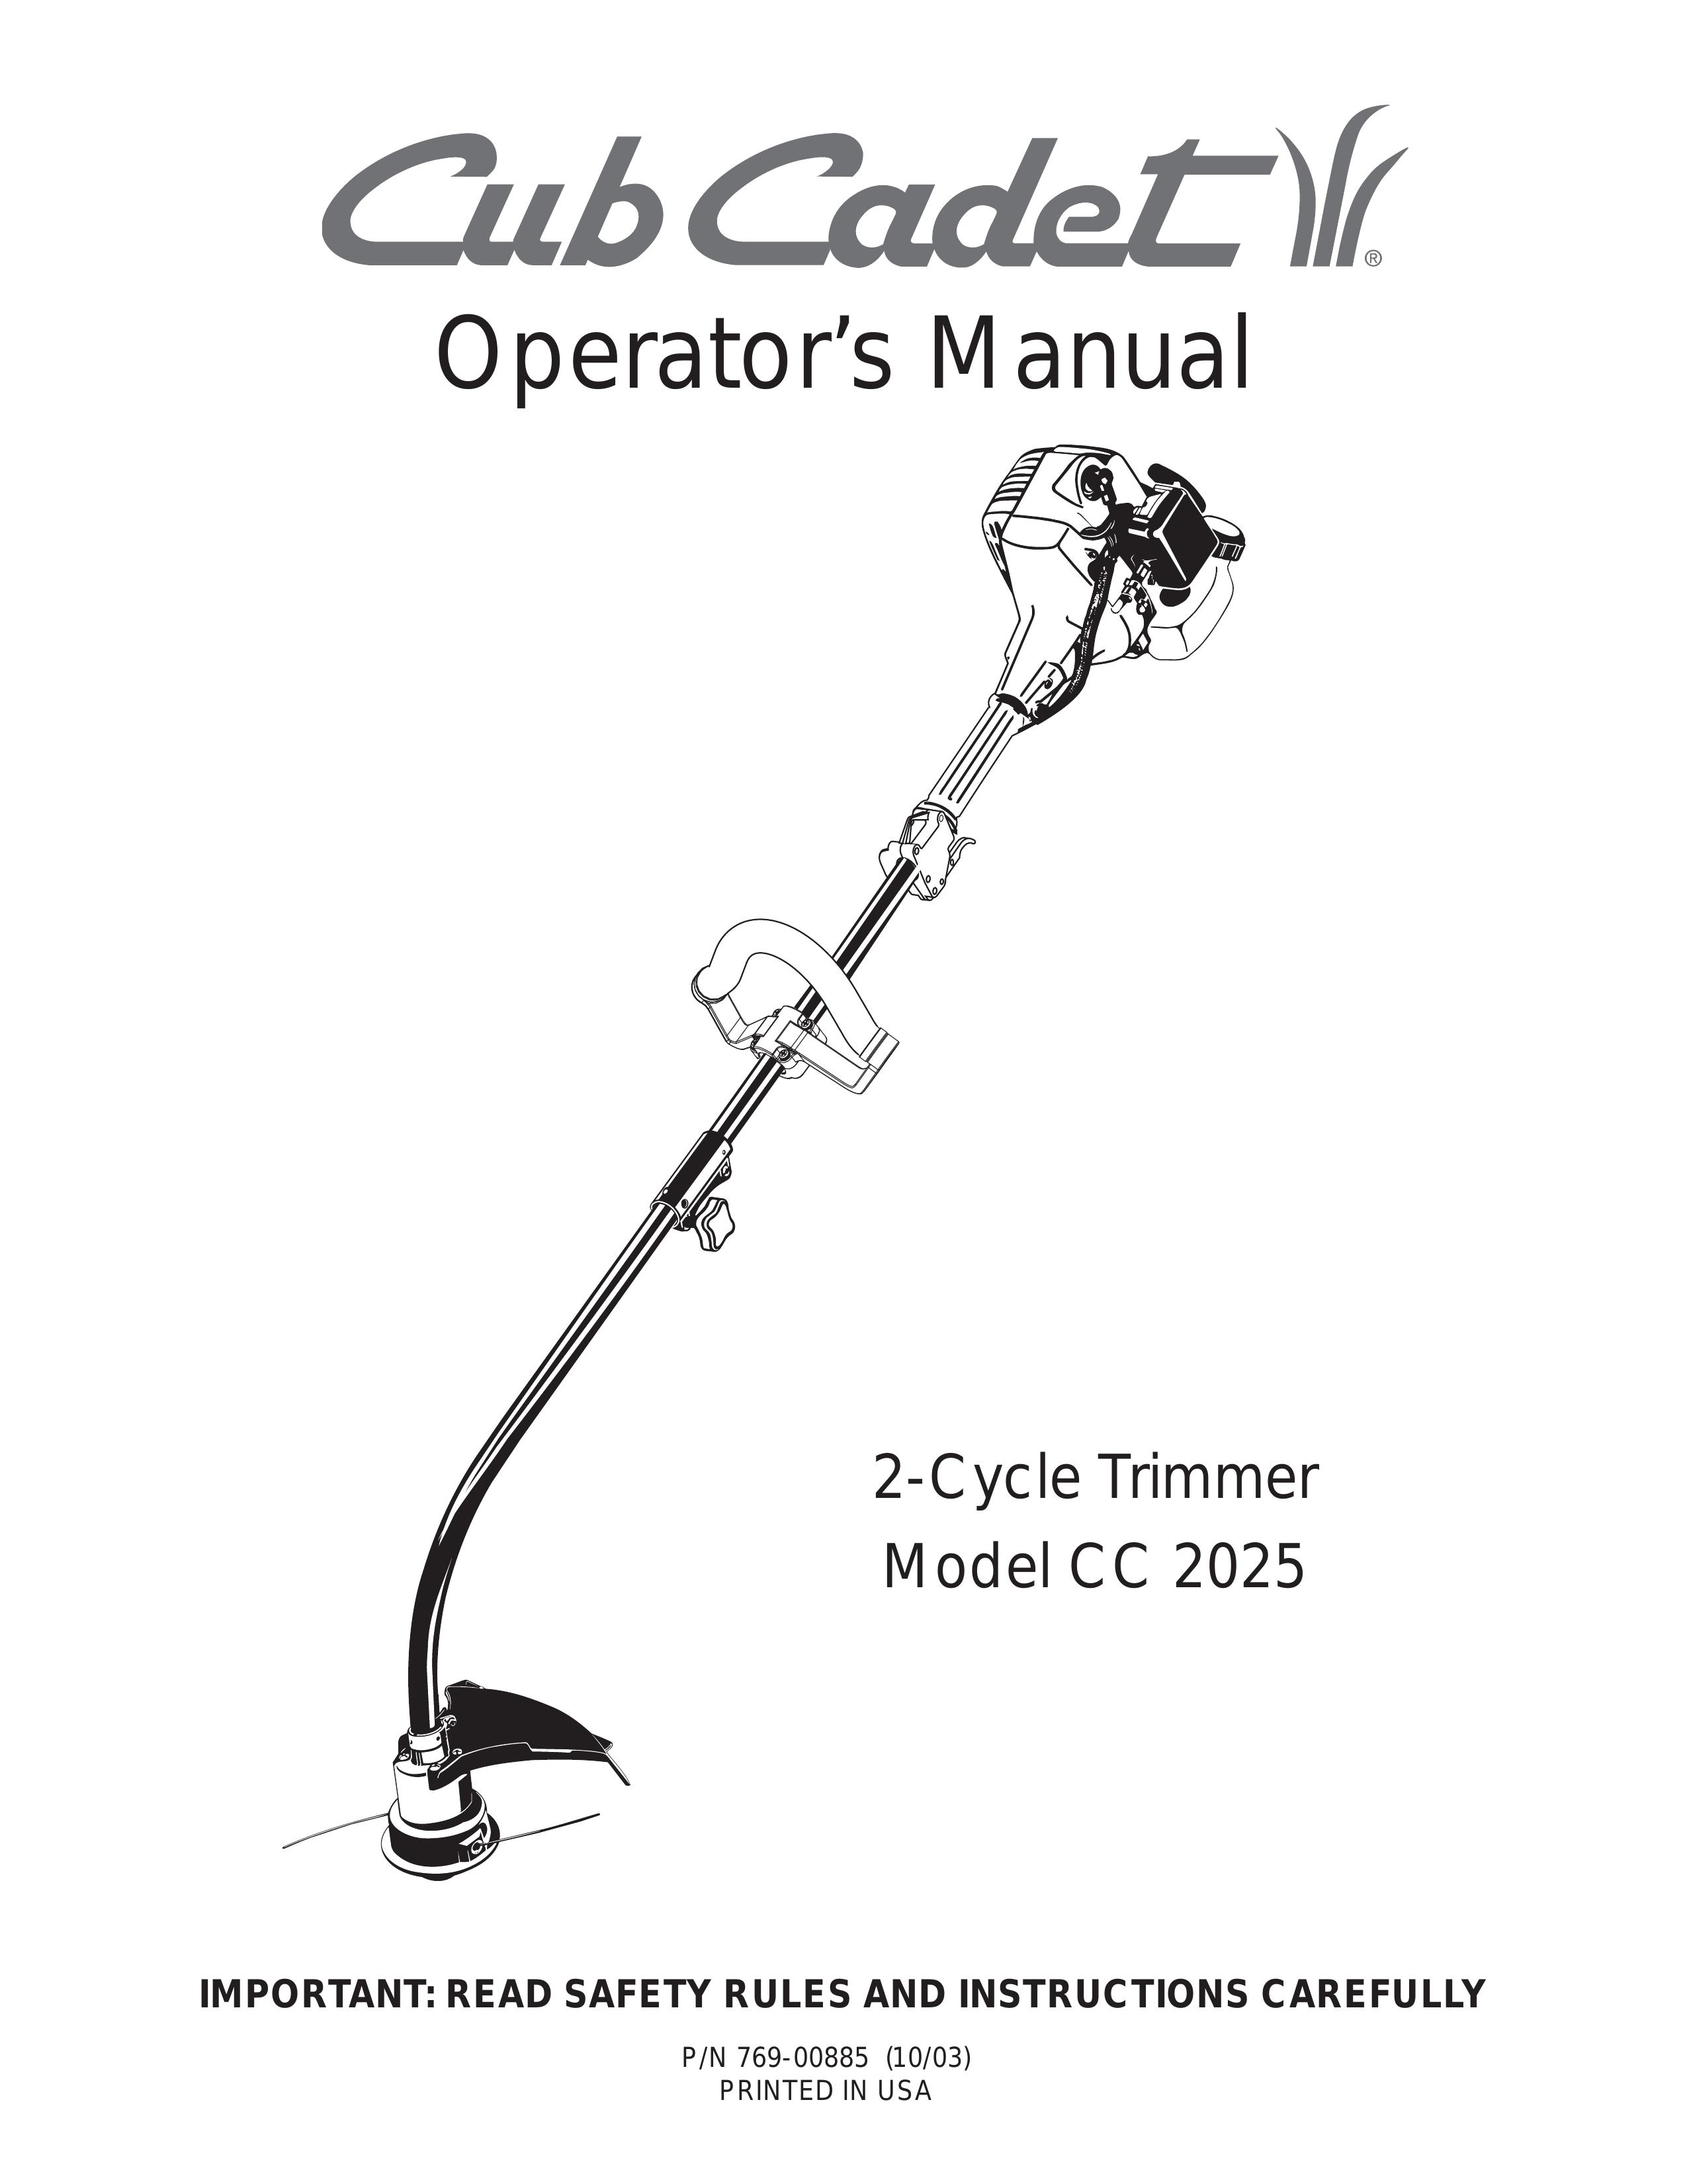 Cub Cadet CC2025 Trimmer User Manual